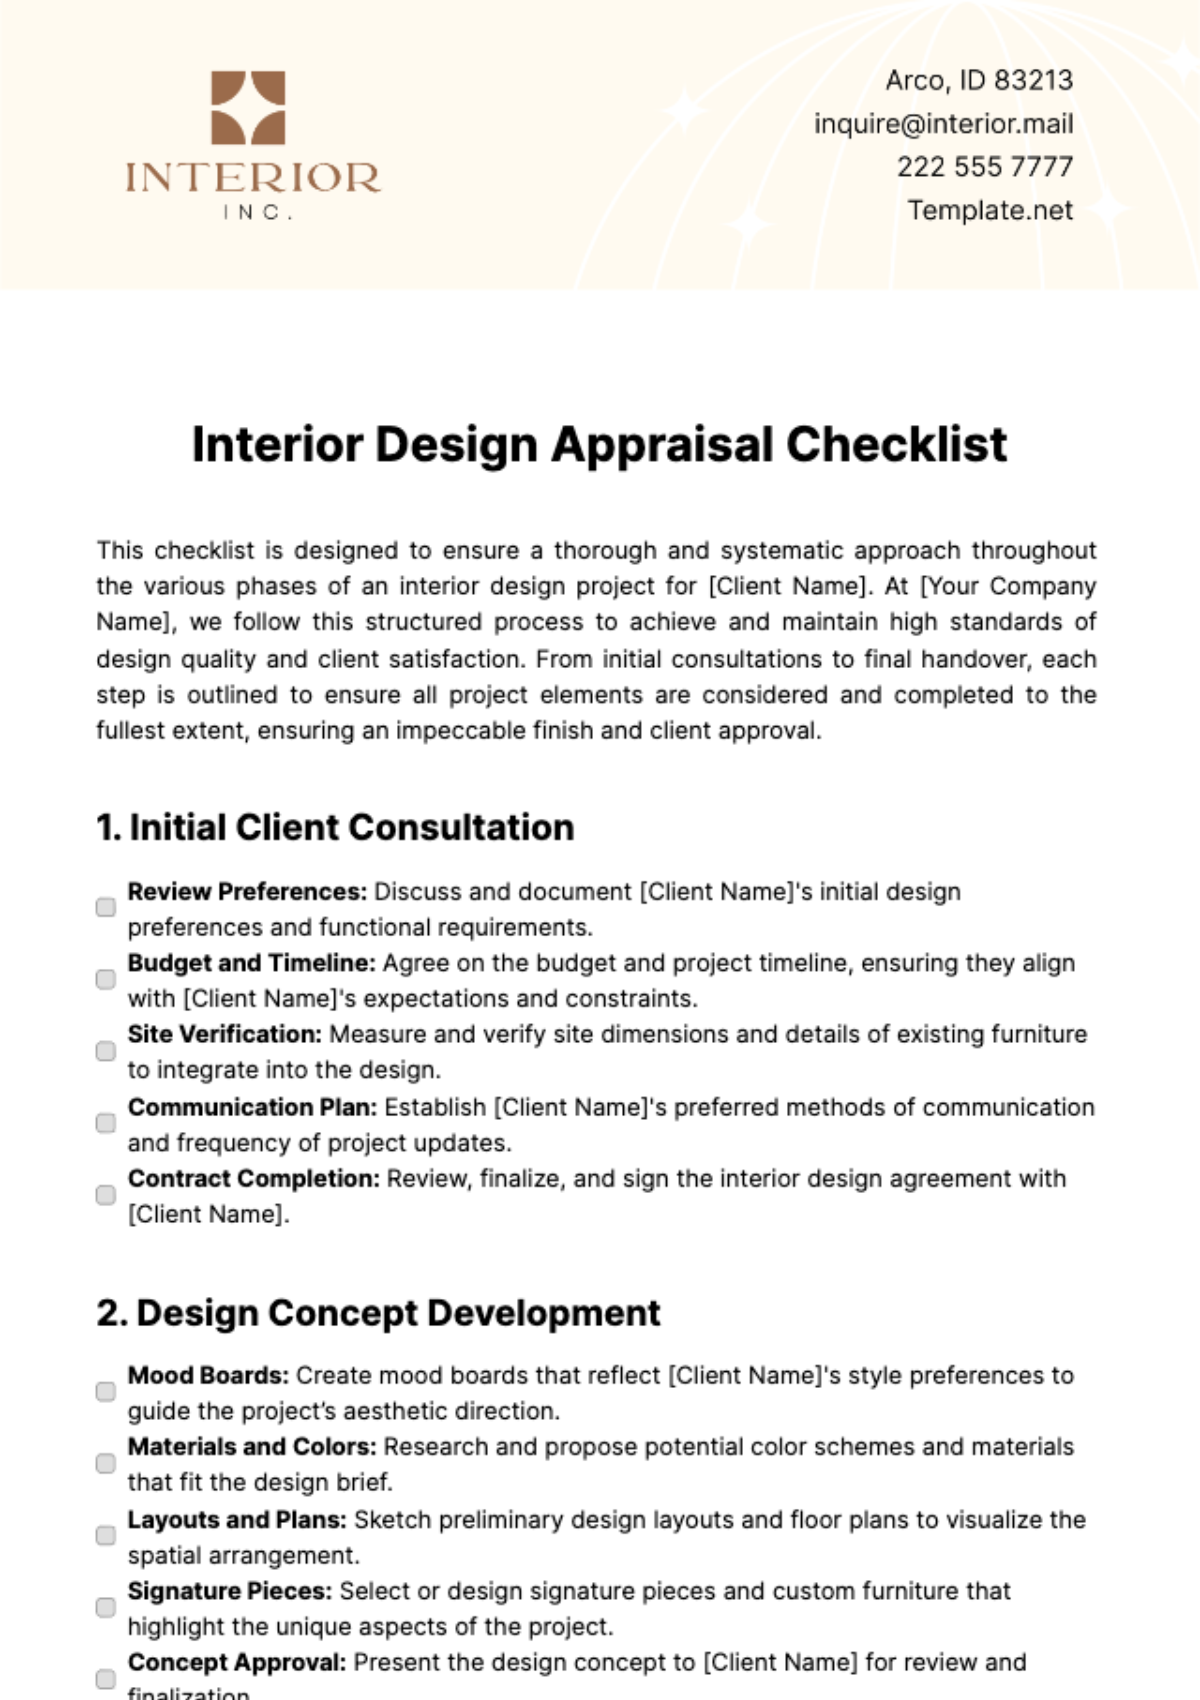 Interior Design Appraisal Checklist Template